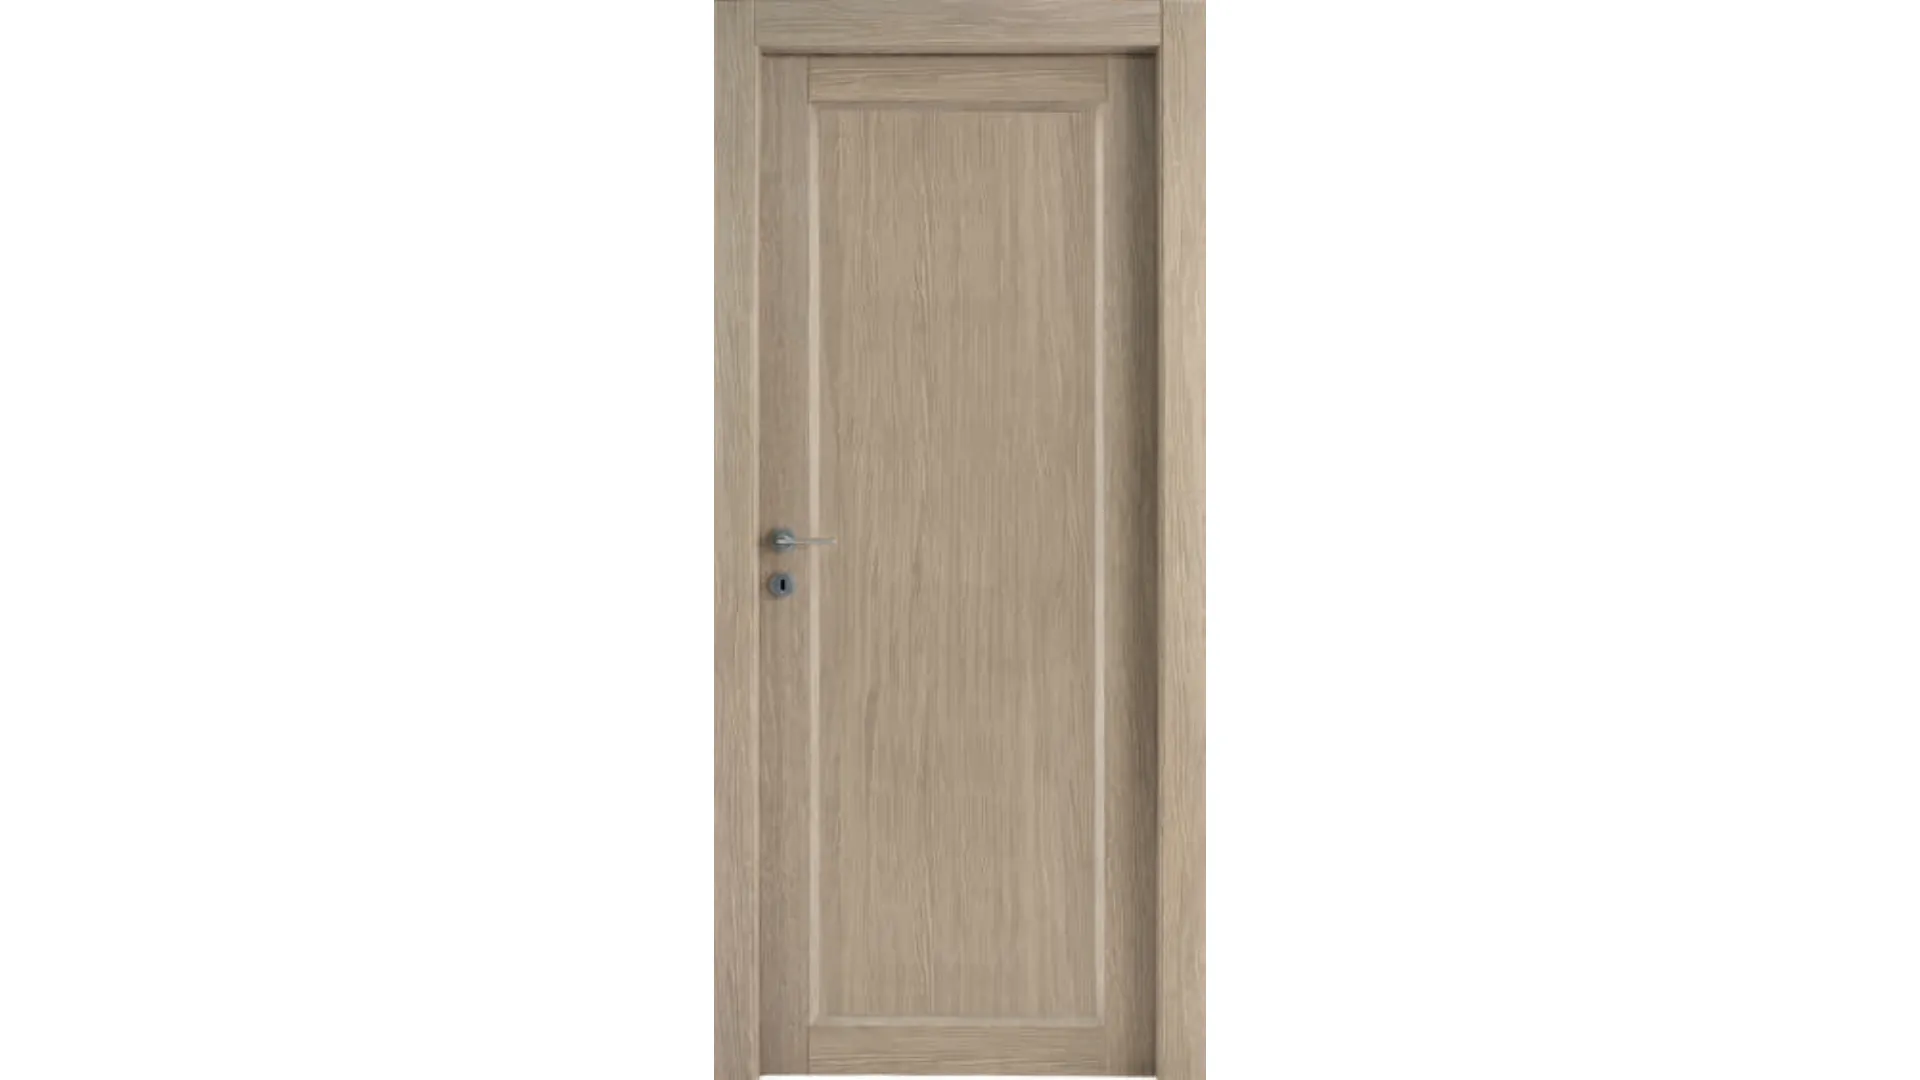 Complete swing door with chest